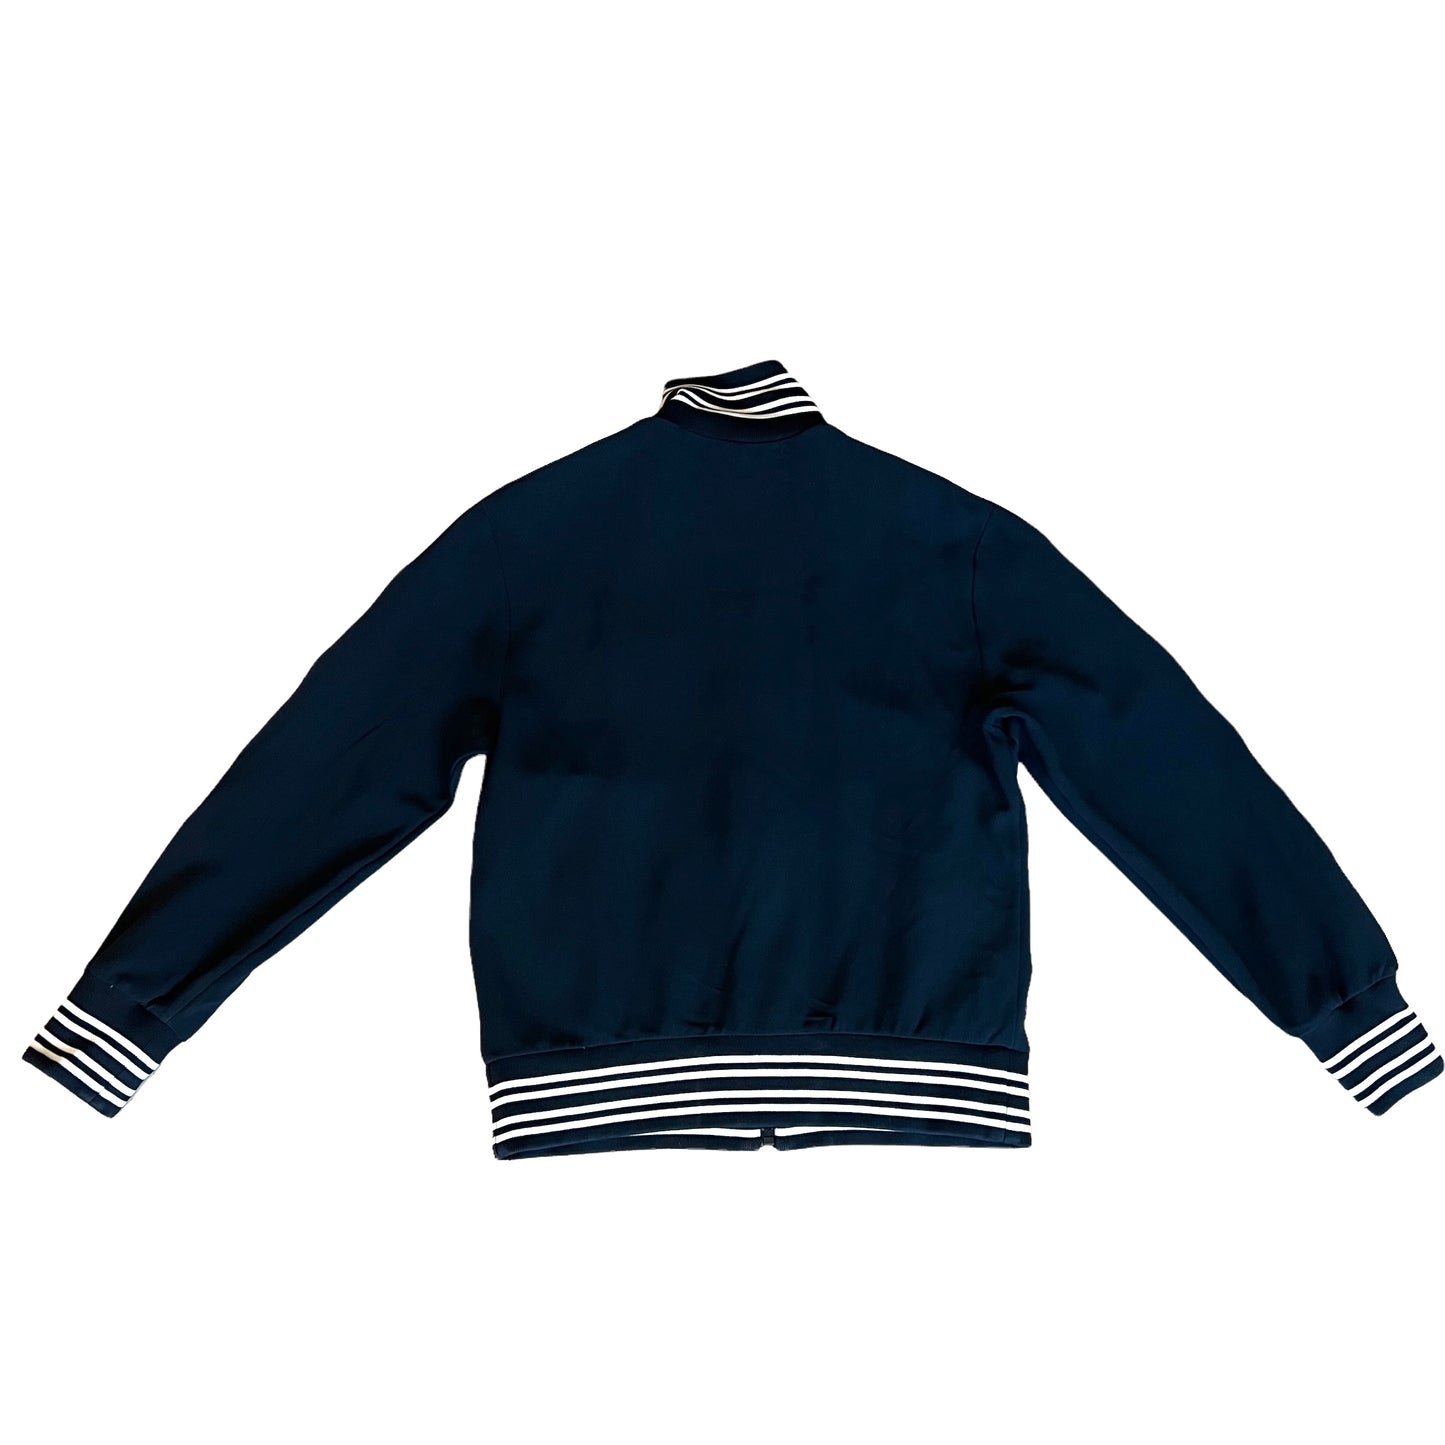 Zipper Sweater - M